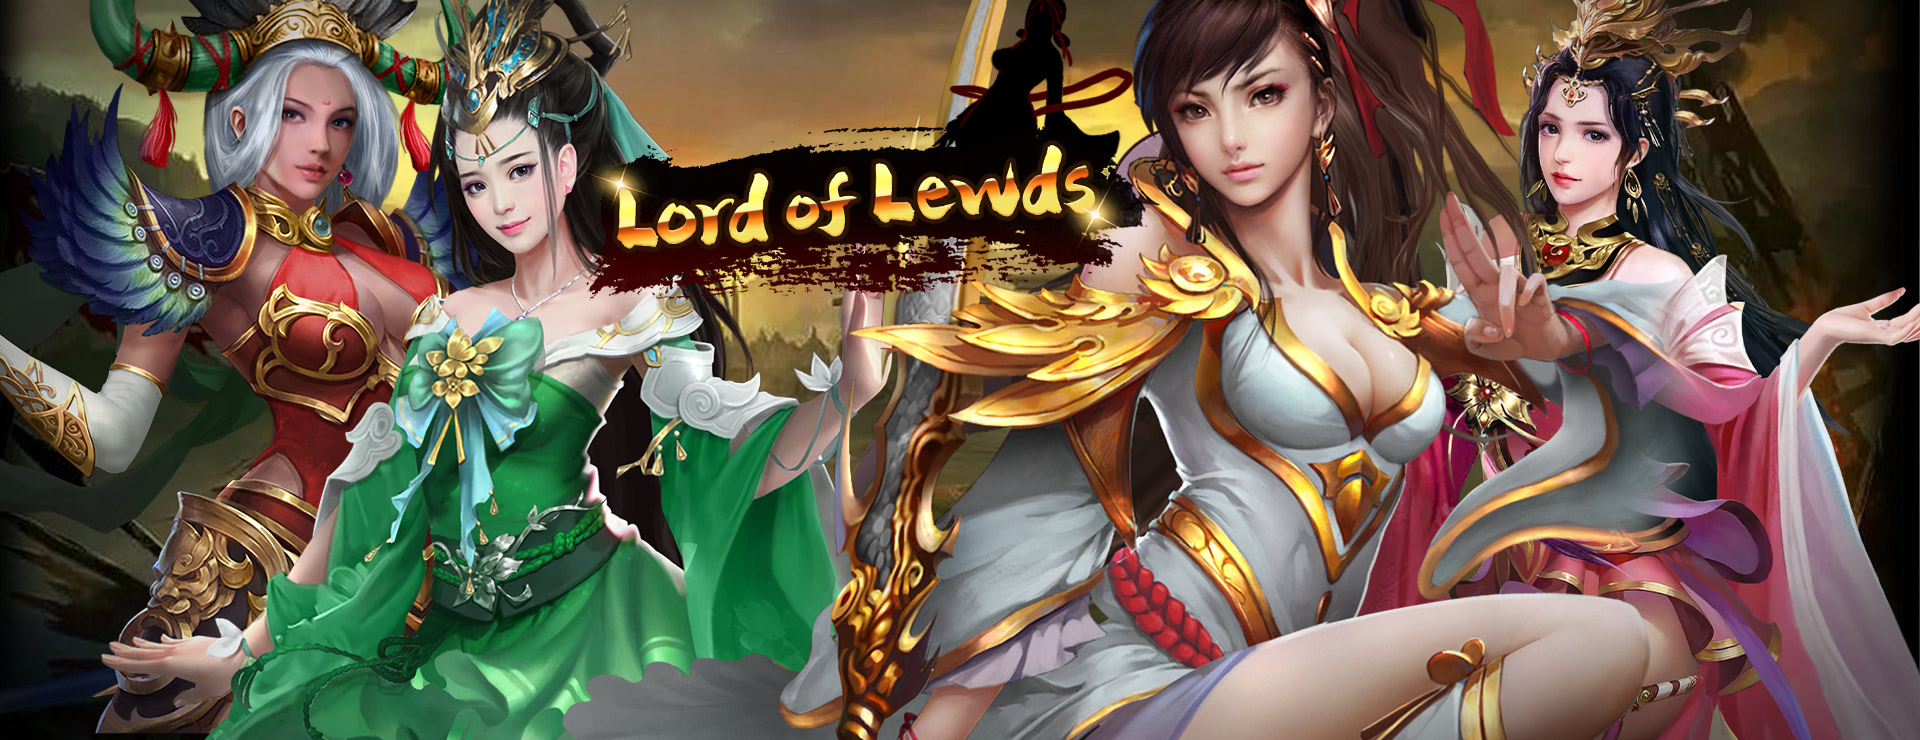 Lord of Lewds Game - Stratégie Jeu